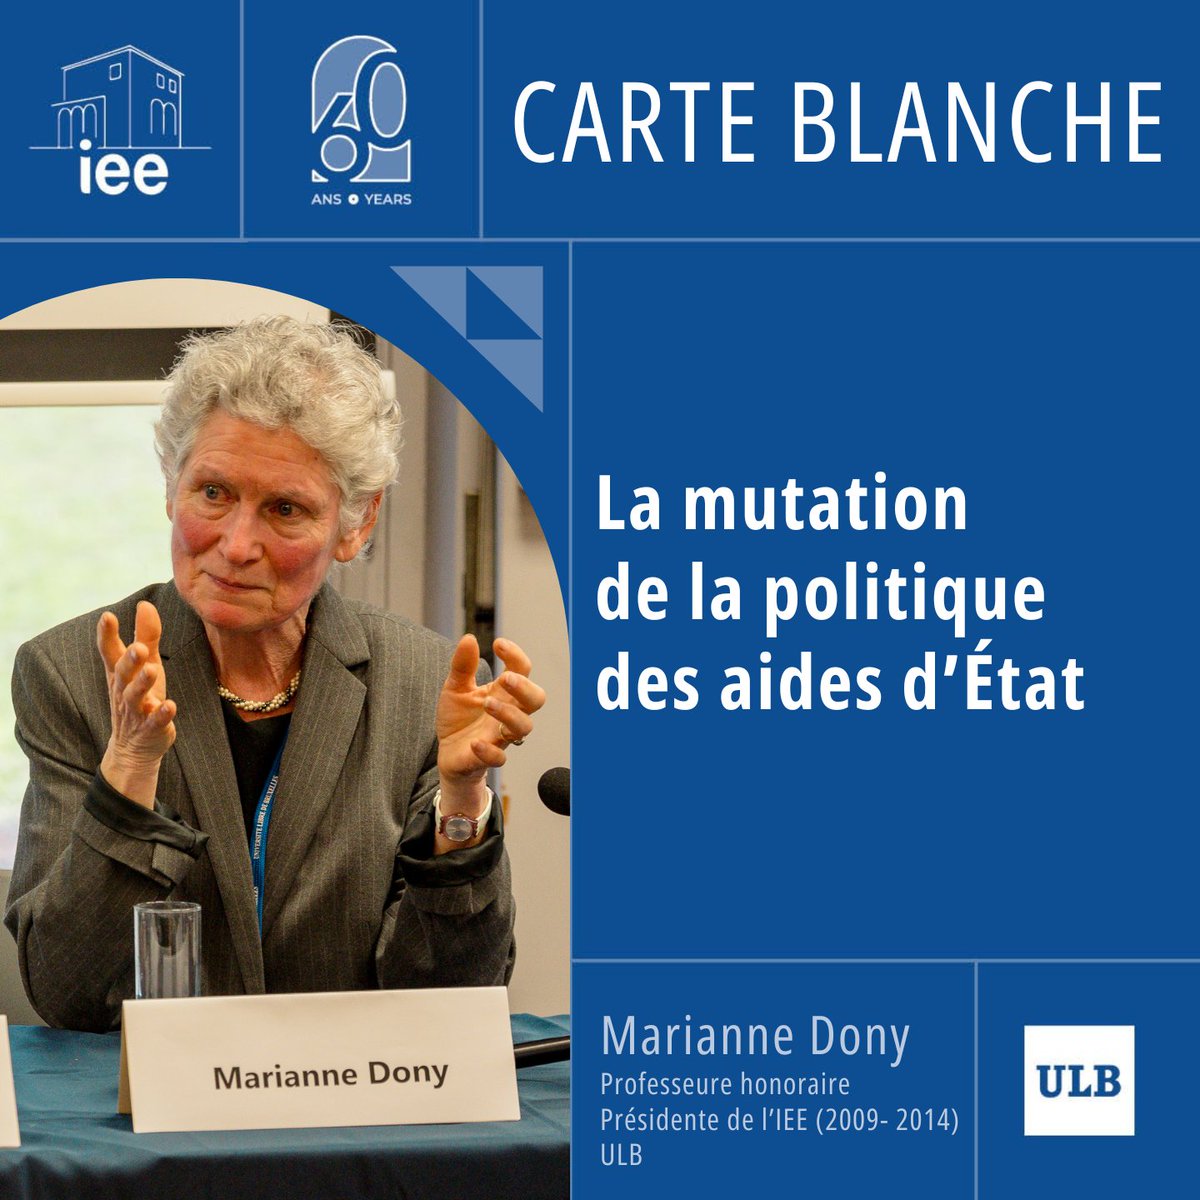 📝Pour clôturer le chapitre thématique portant sur l’Europe et l’économie, nous avons le plaisir de publier la carte blanche de Marianne Dony, professeure honoraire et ancienne présidente de l’IEE. Lire la carte blanche 👉bit.ly/3xTCmPe #IEE60